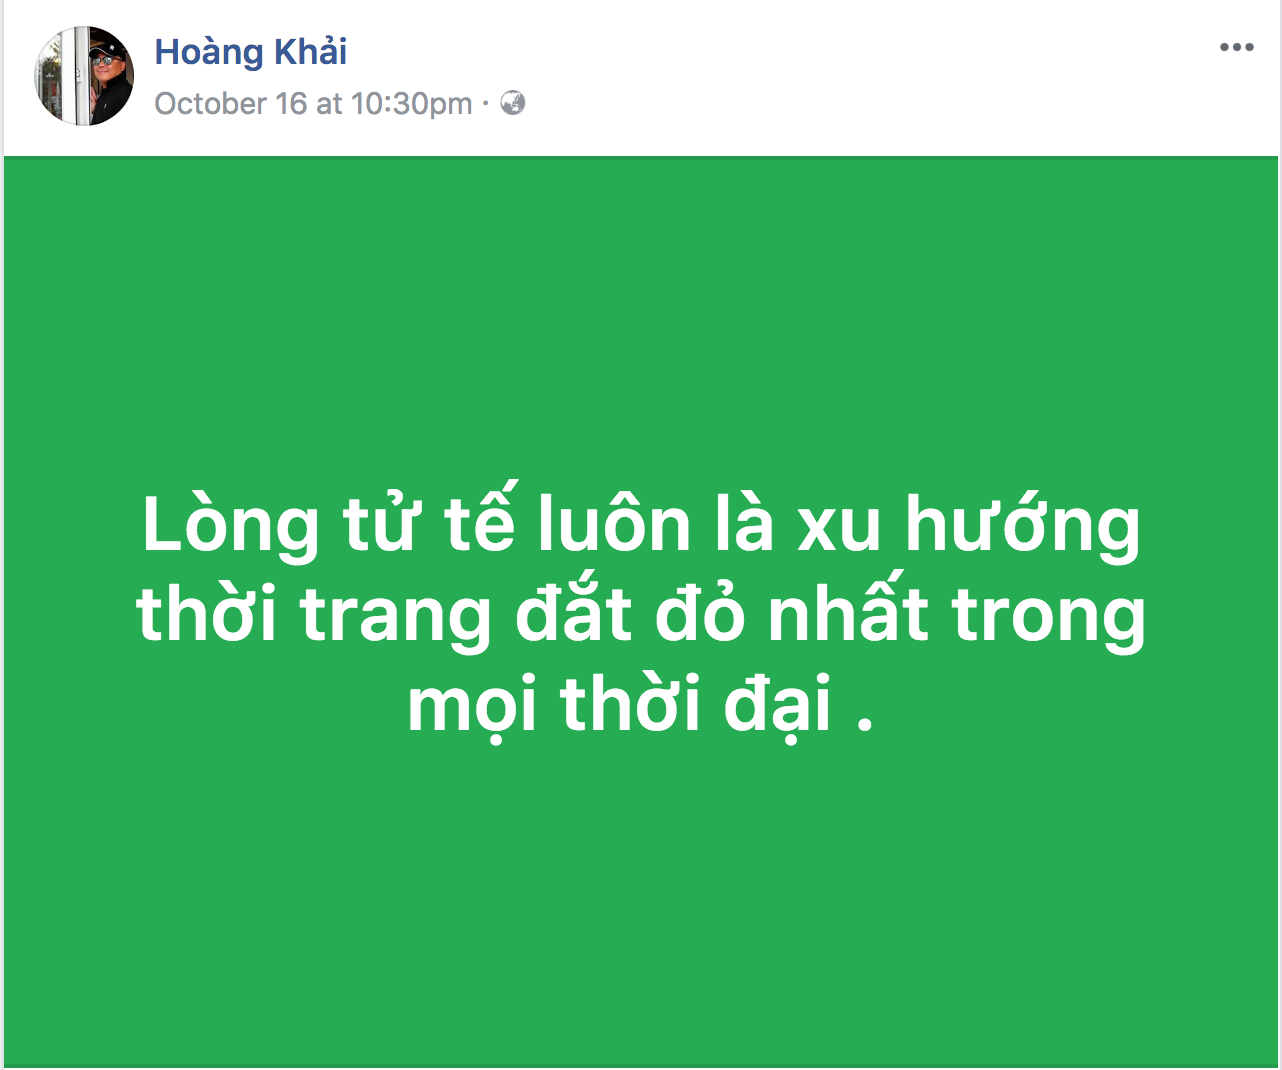 Ngày 16.10, chỉ vài ngày scandal khăn lụa KhaiSilk dùng hàng Trung Quốc,  ông Khải đăng một status lên Facebook cho rằng “Lòng tử tế là xu hướng thời trang đắt đỏ nhất mọi thời đai“.